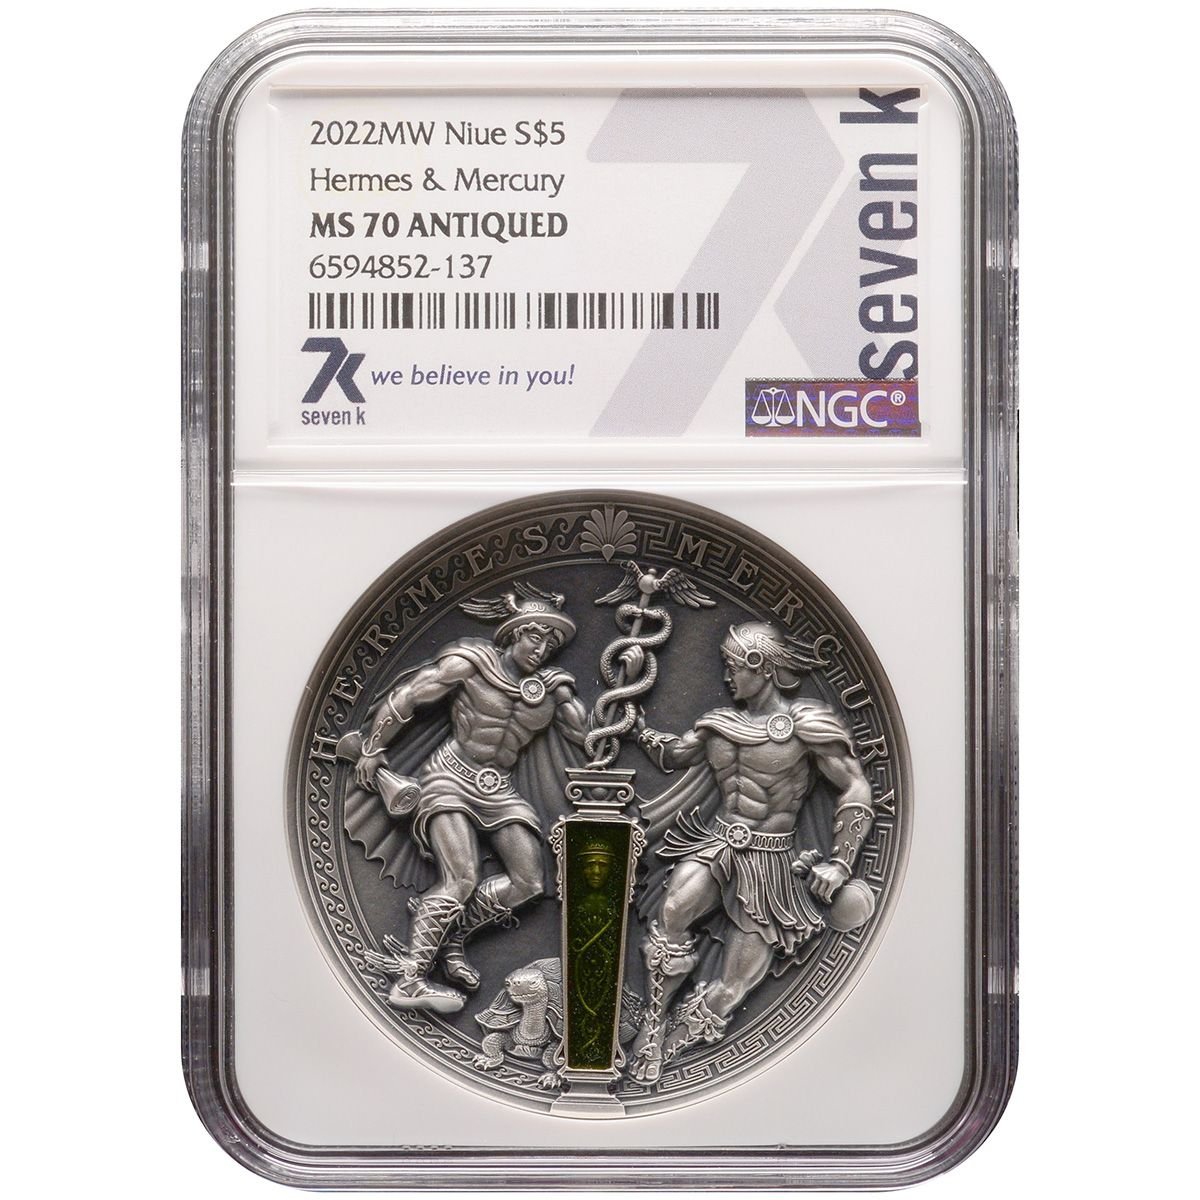 2022 Hermes and Mercury 2 oz Silver Coin MS70 - Oz Bullion